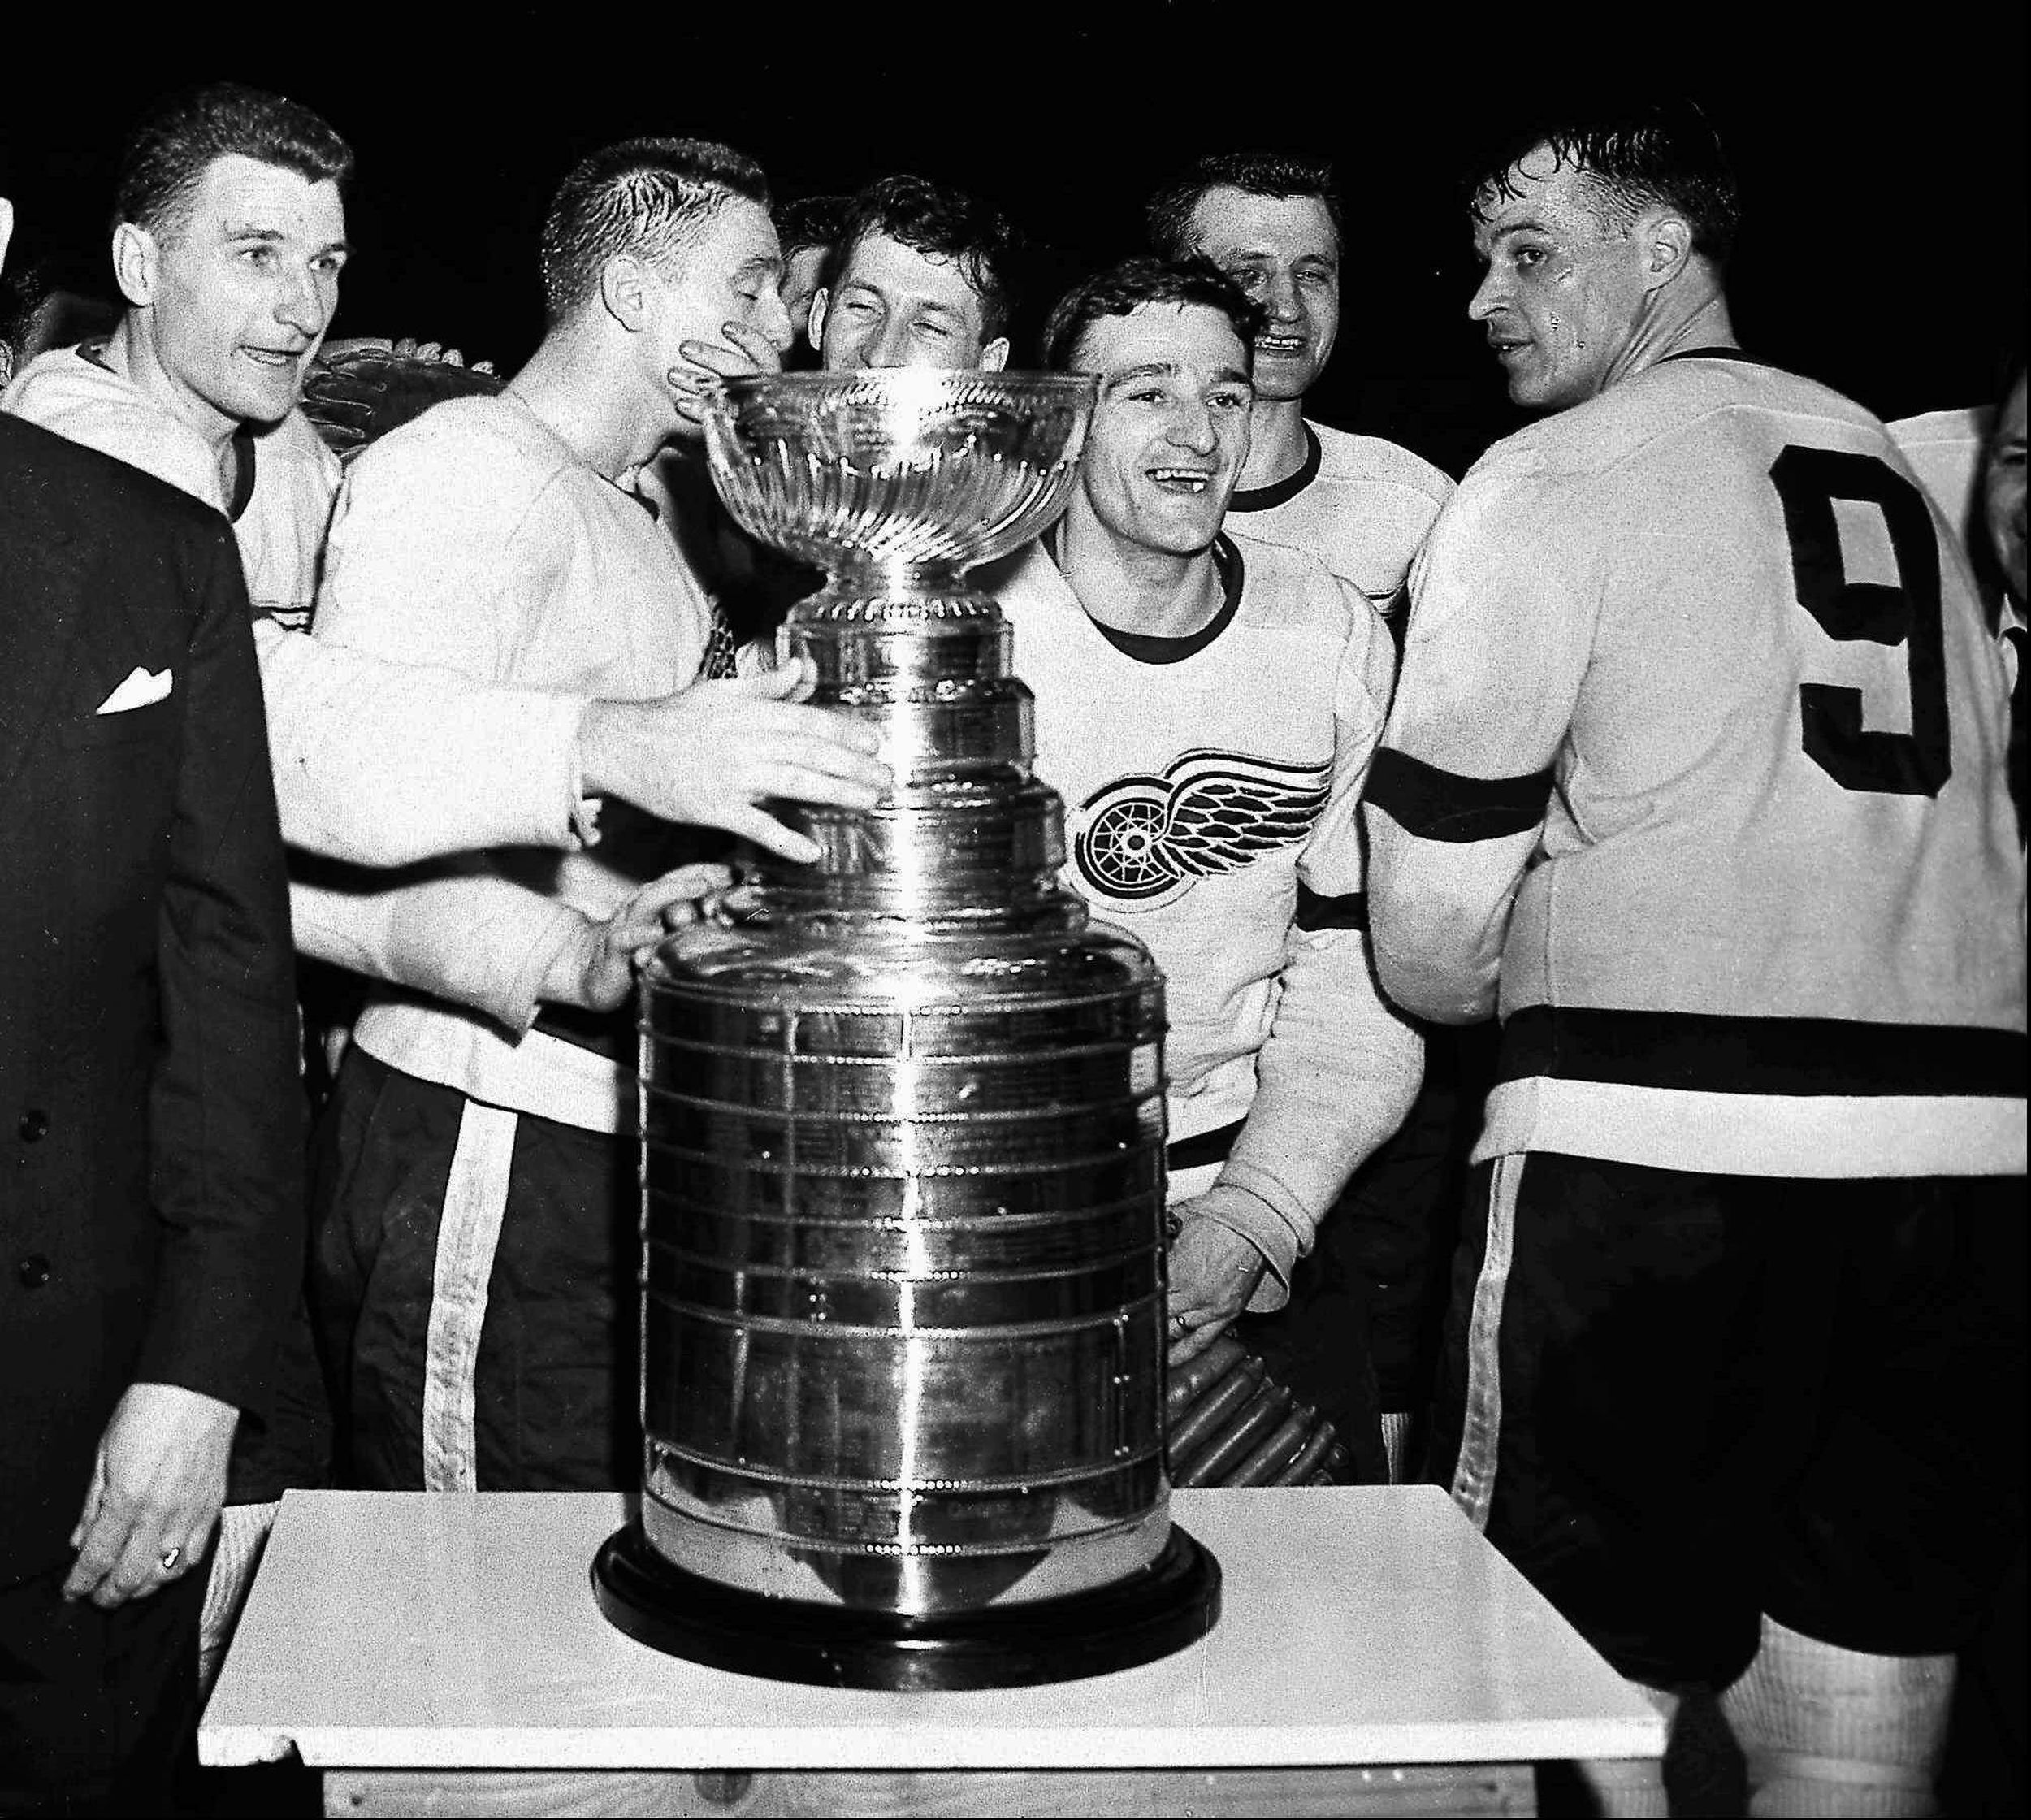 Gordie Howe, ice hockey star – obituary